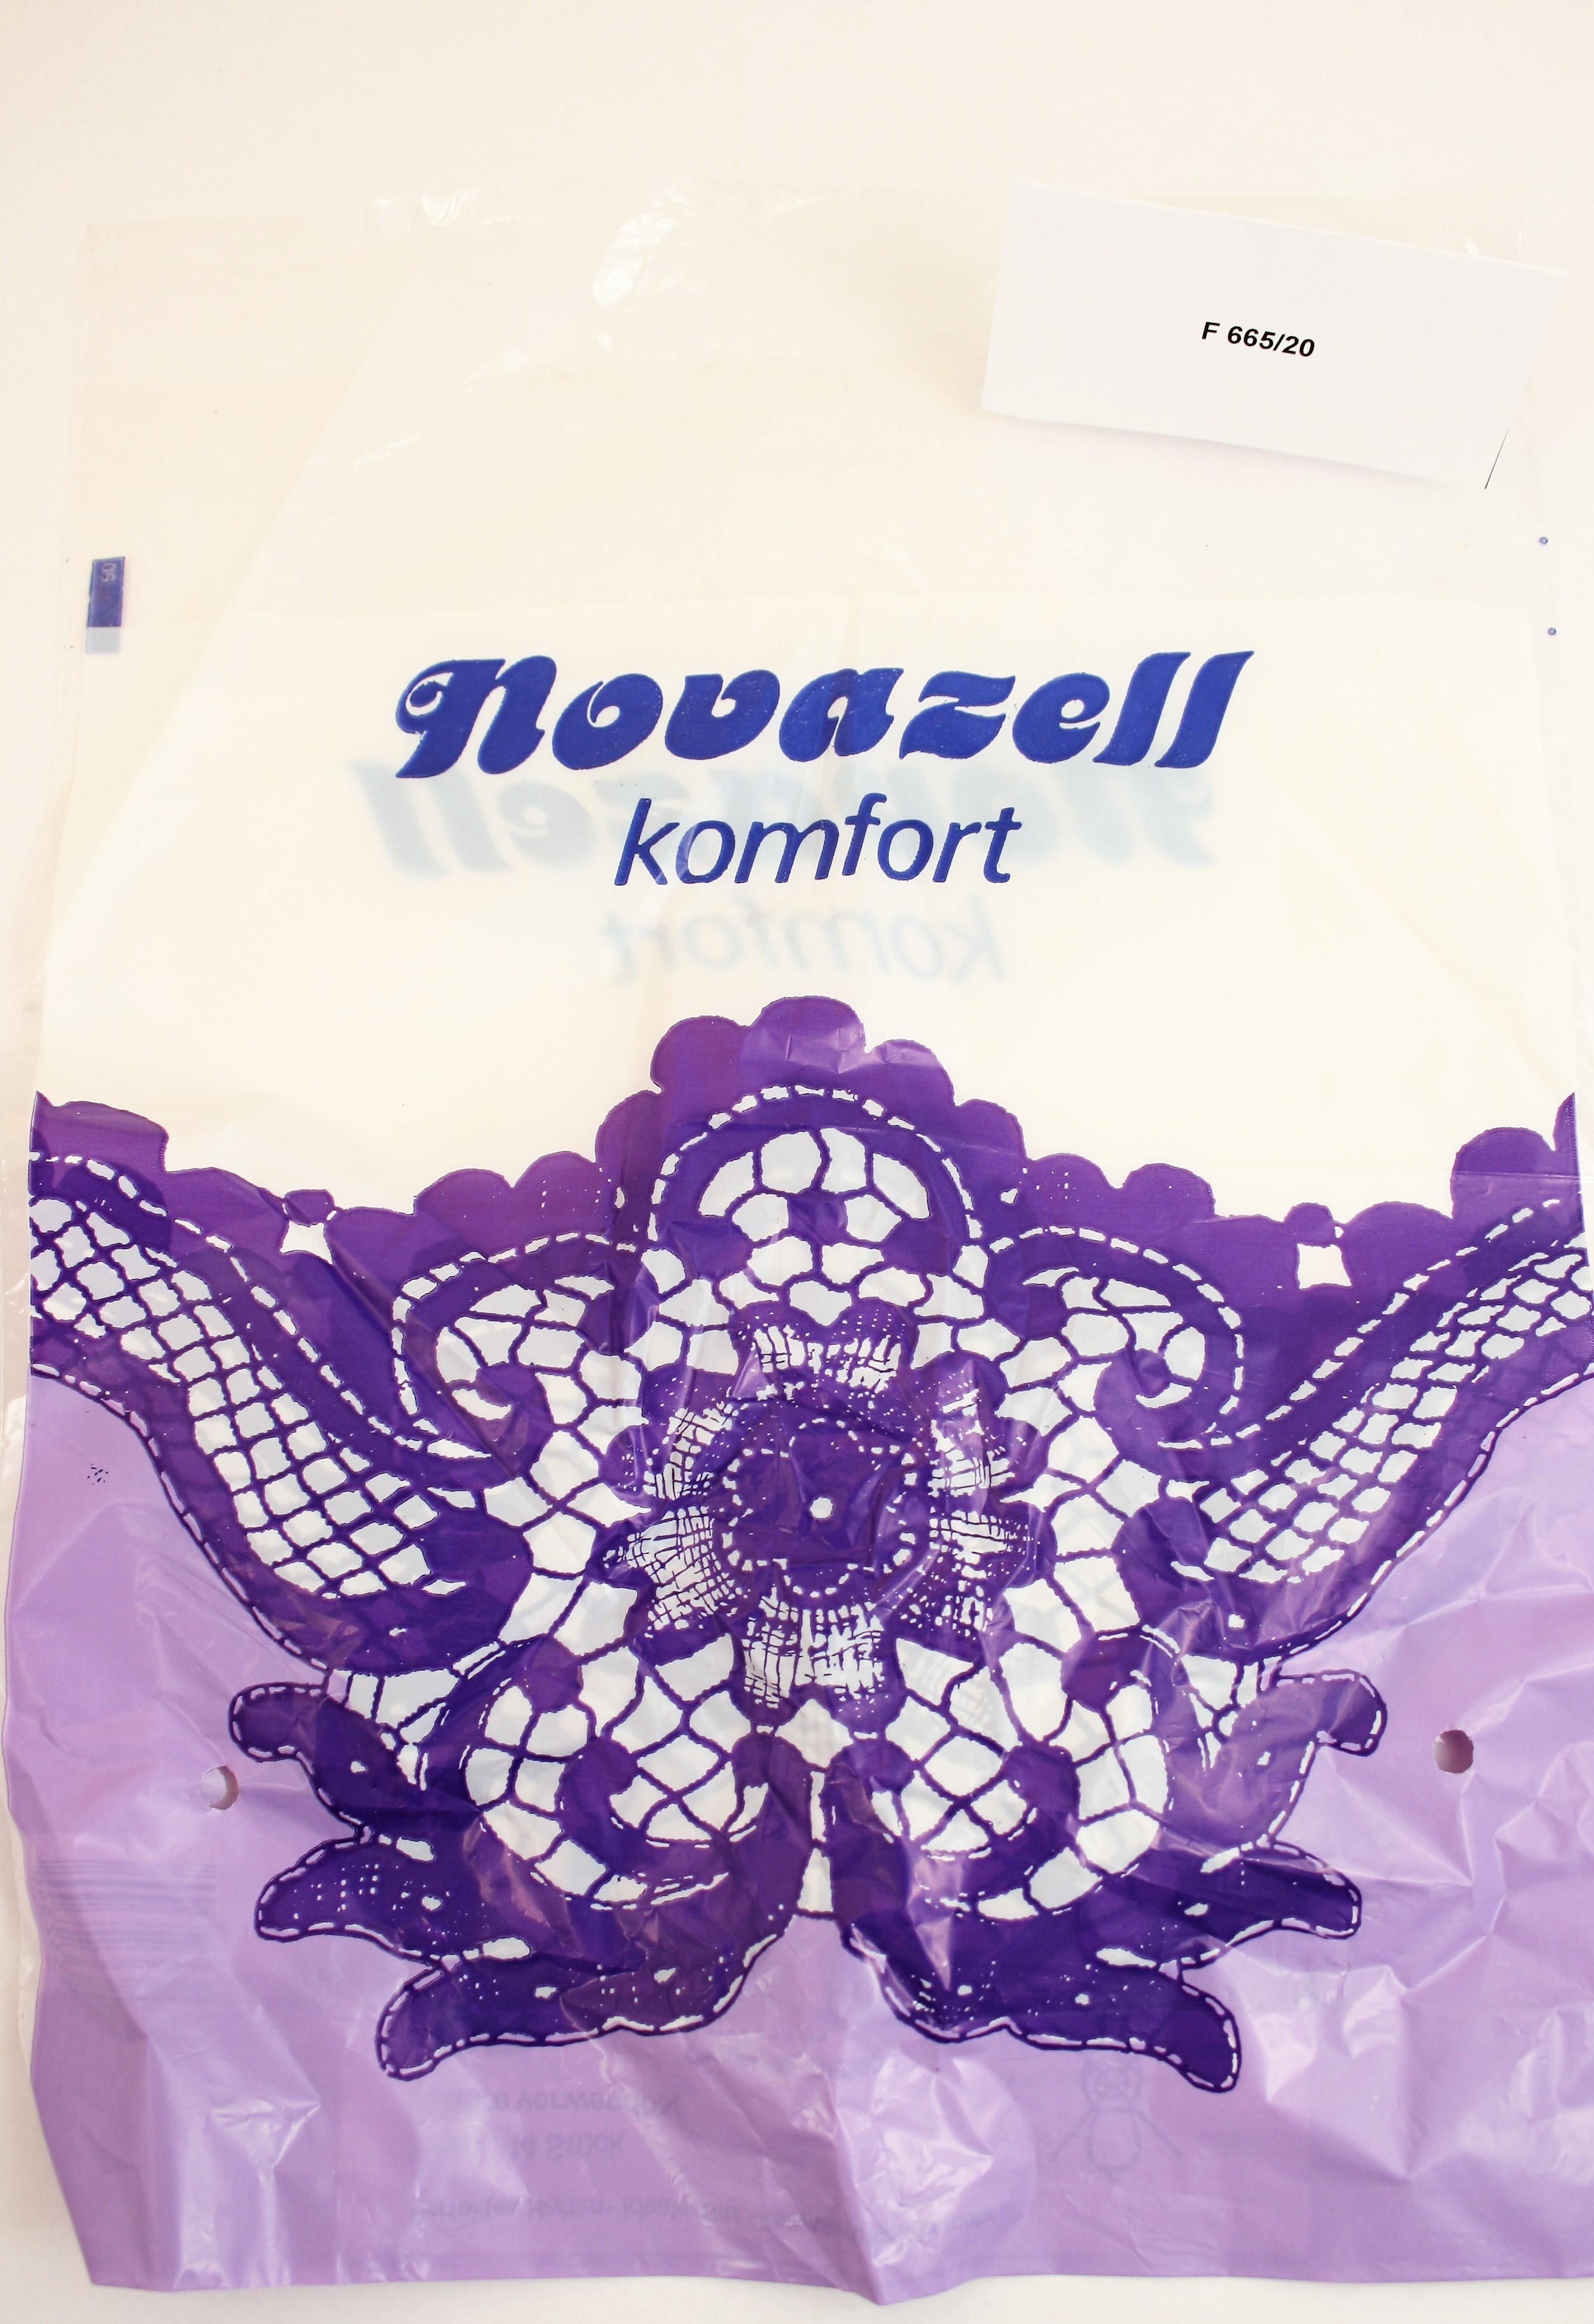 Novazell komfort, Plastiktüte (Industrie- und Filmmuseum Wolfen CC BY-NC-SA)